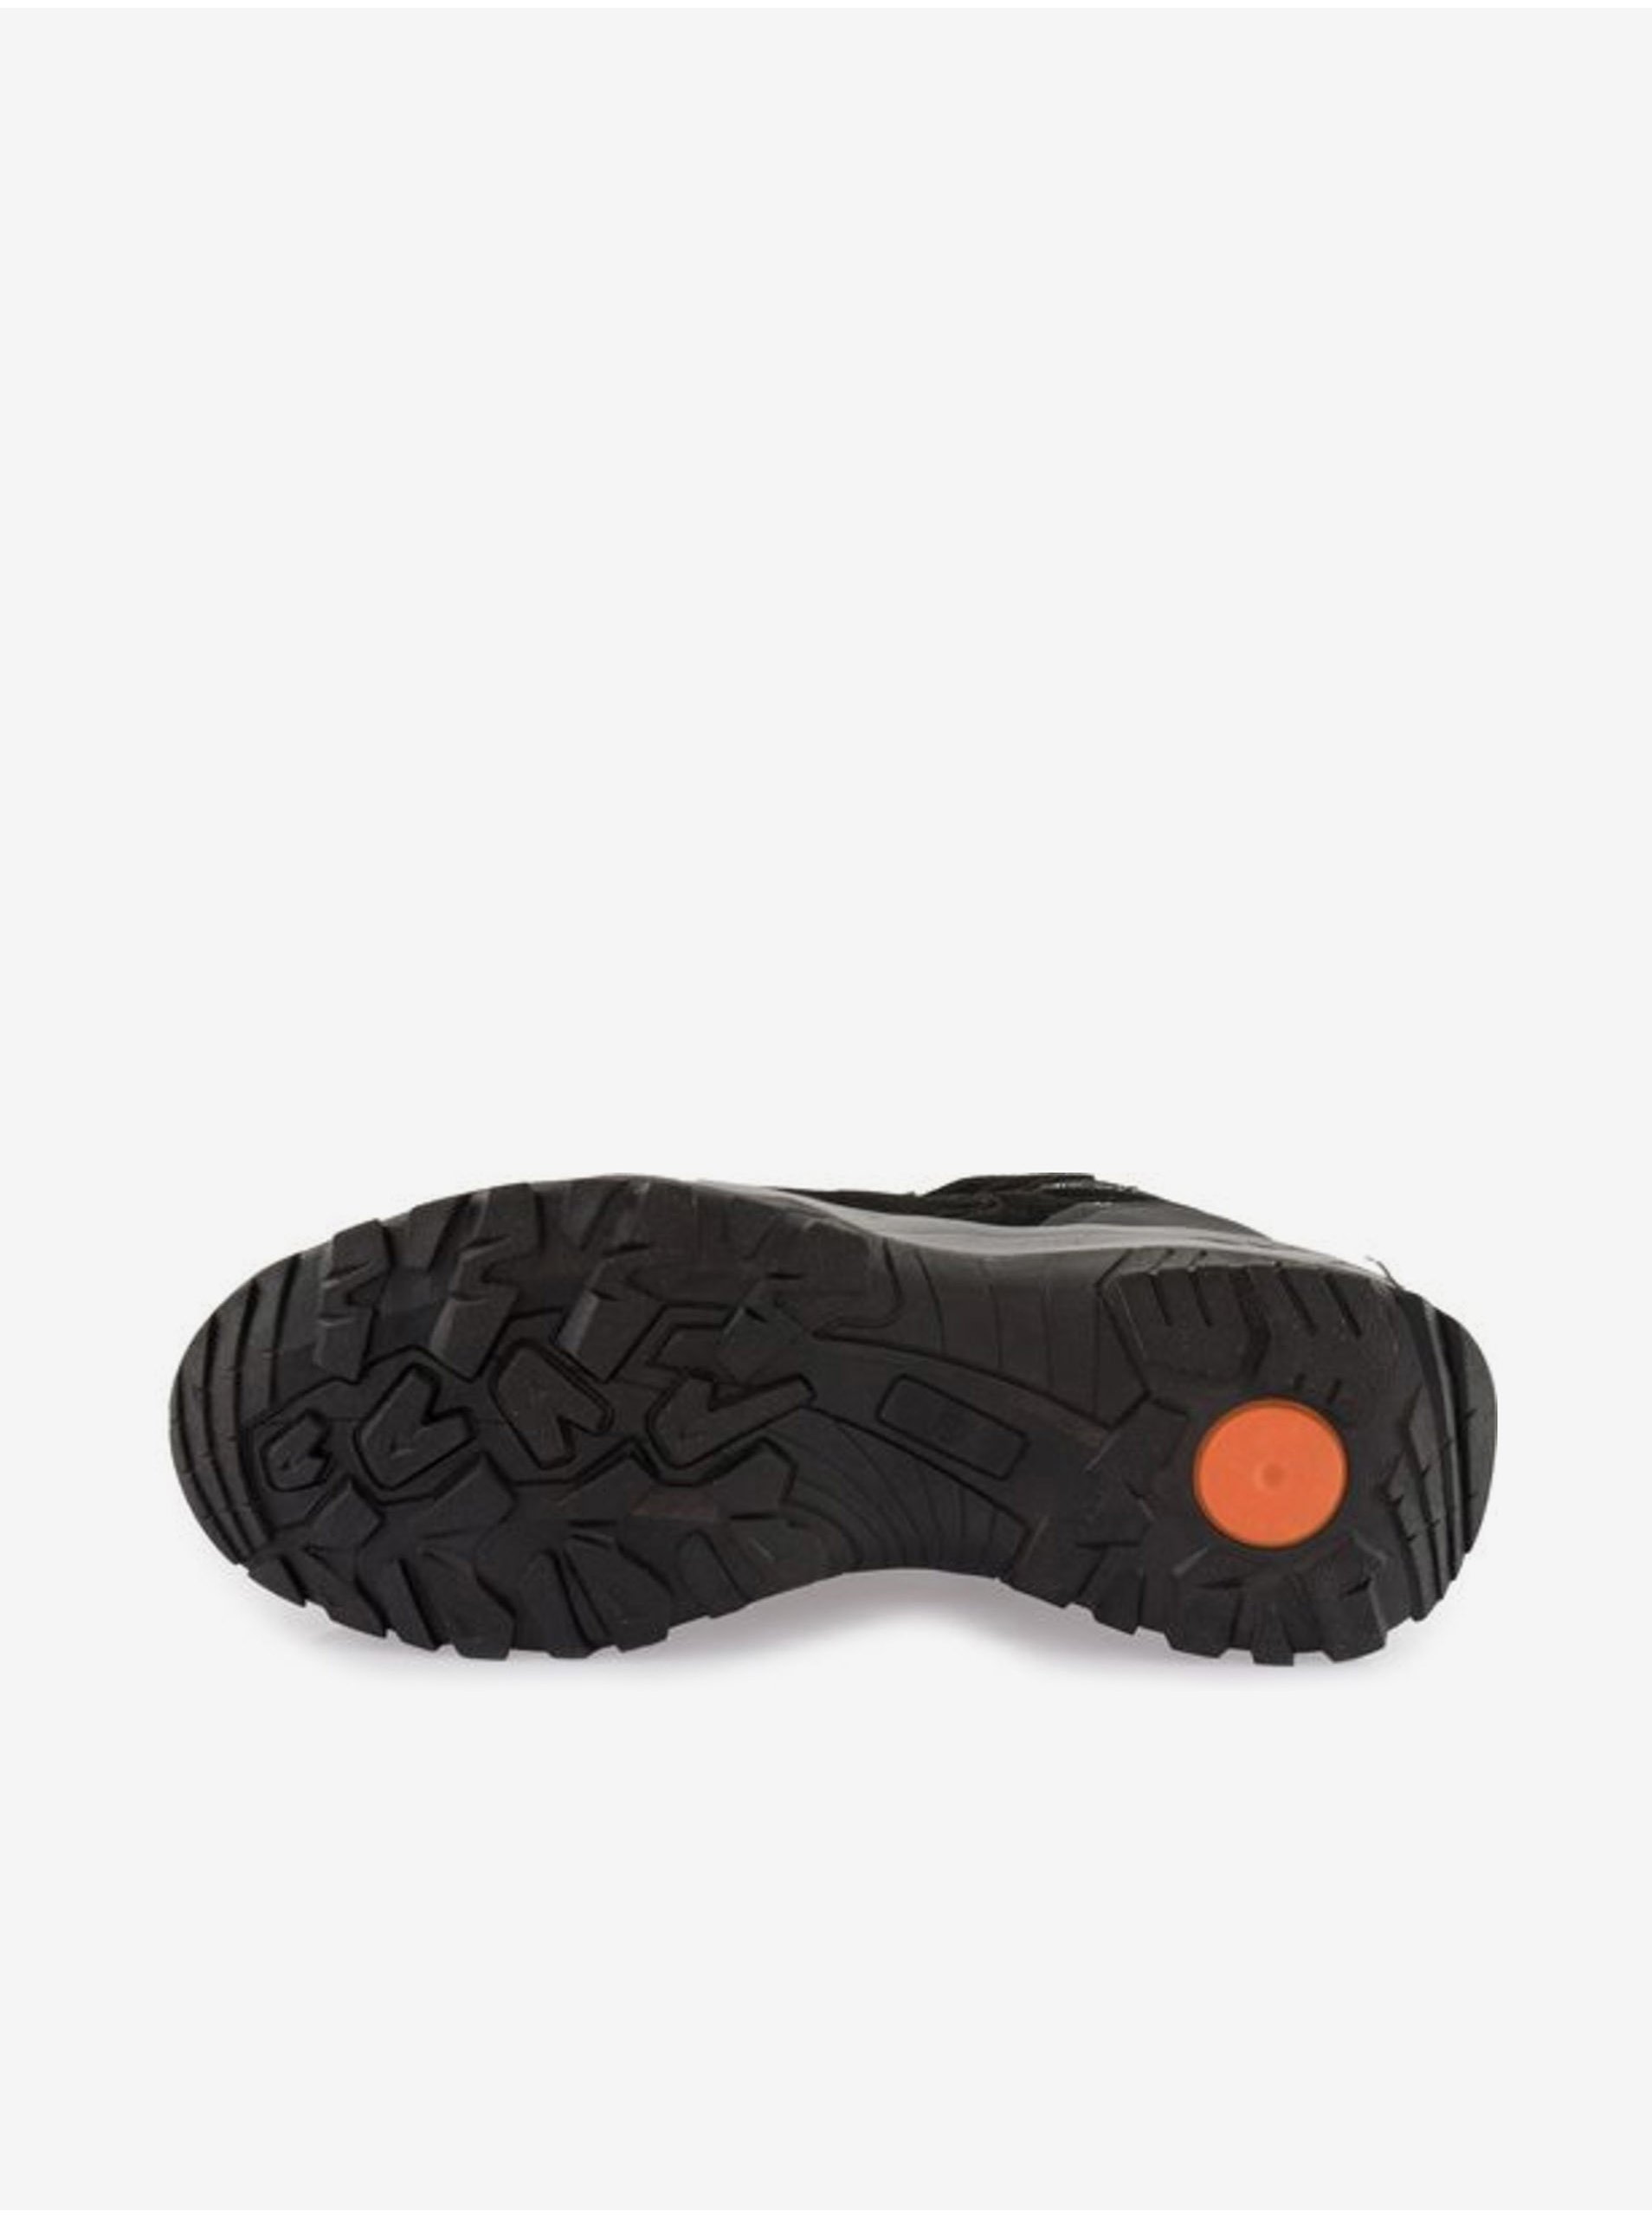 Černé semišové kotníkové outdoorové boty ALPINE PRO Rommos